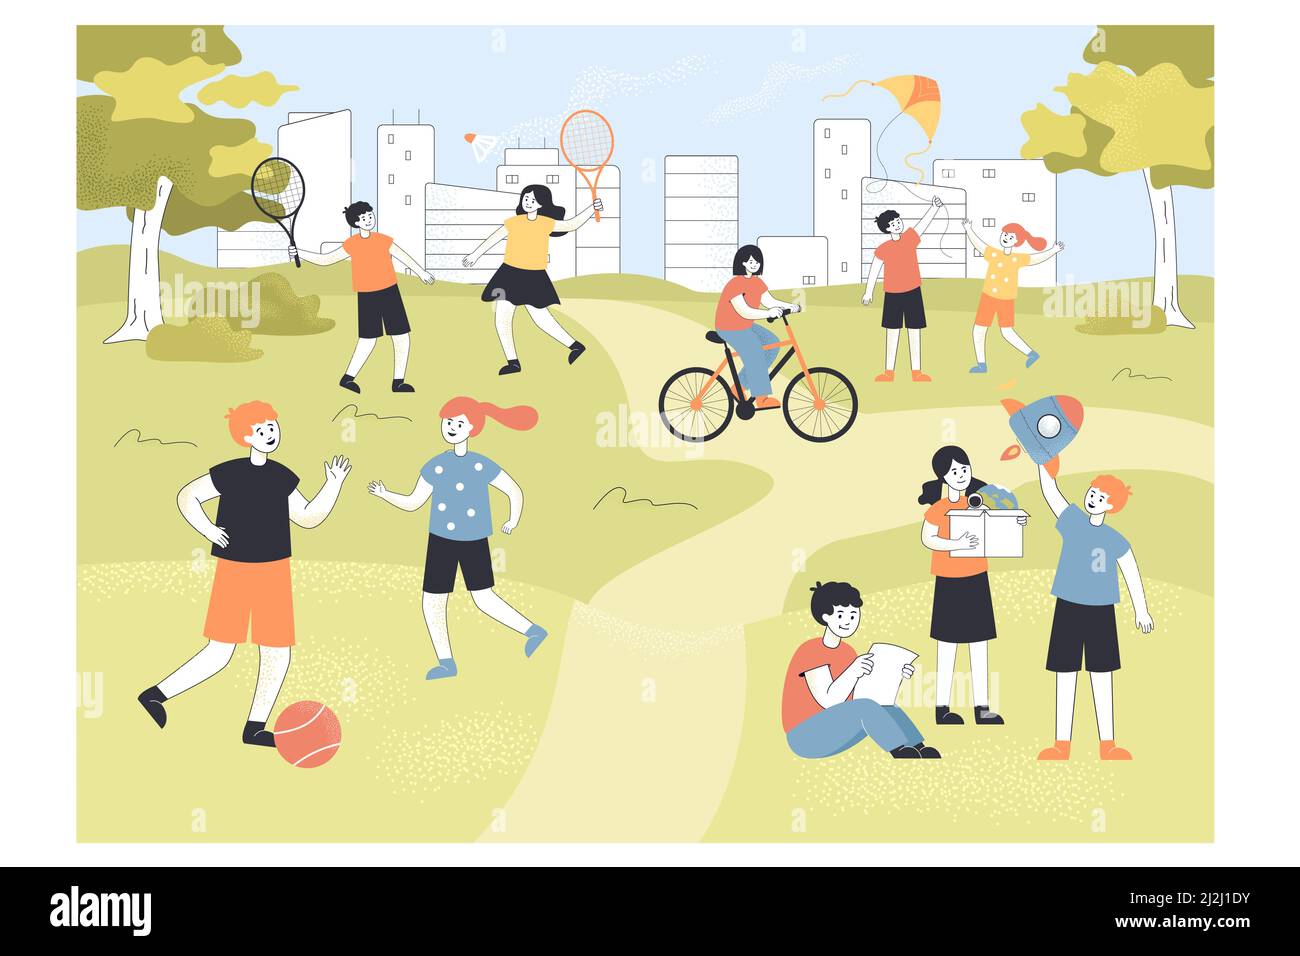 Nette kleine Kinder verbringen Zeit im Park oder Sommercamp. Kinder spielen Fußball und Badminton auf Spielplatz flache Vektor-Illustration. Kindheit, outd Stock Vektor